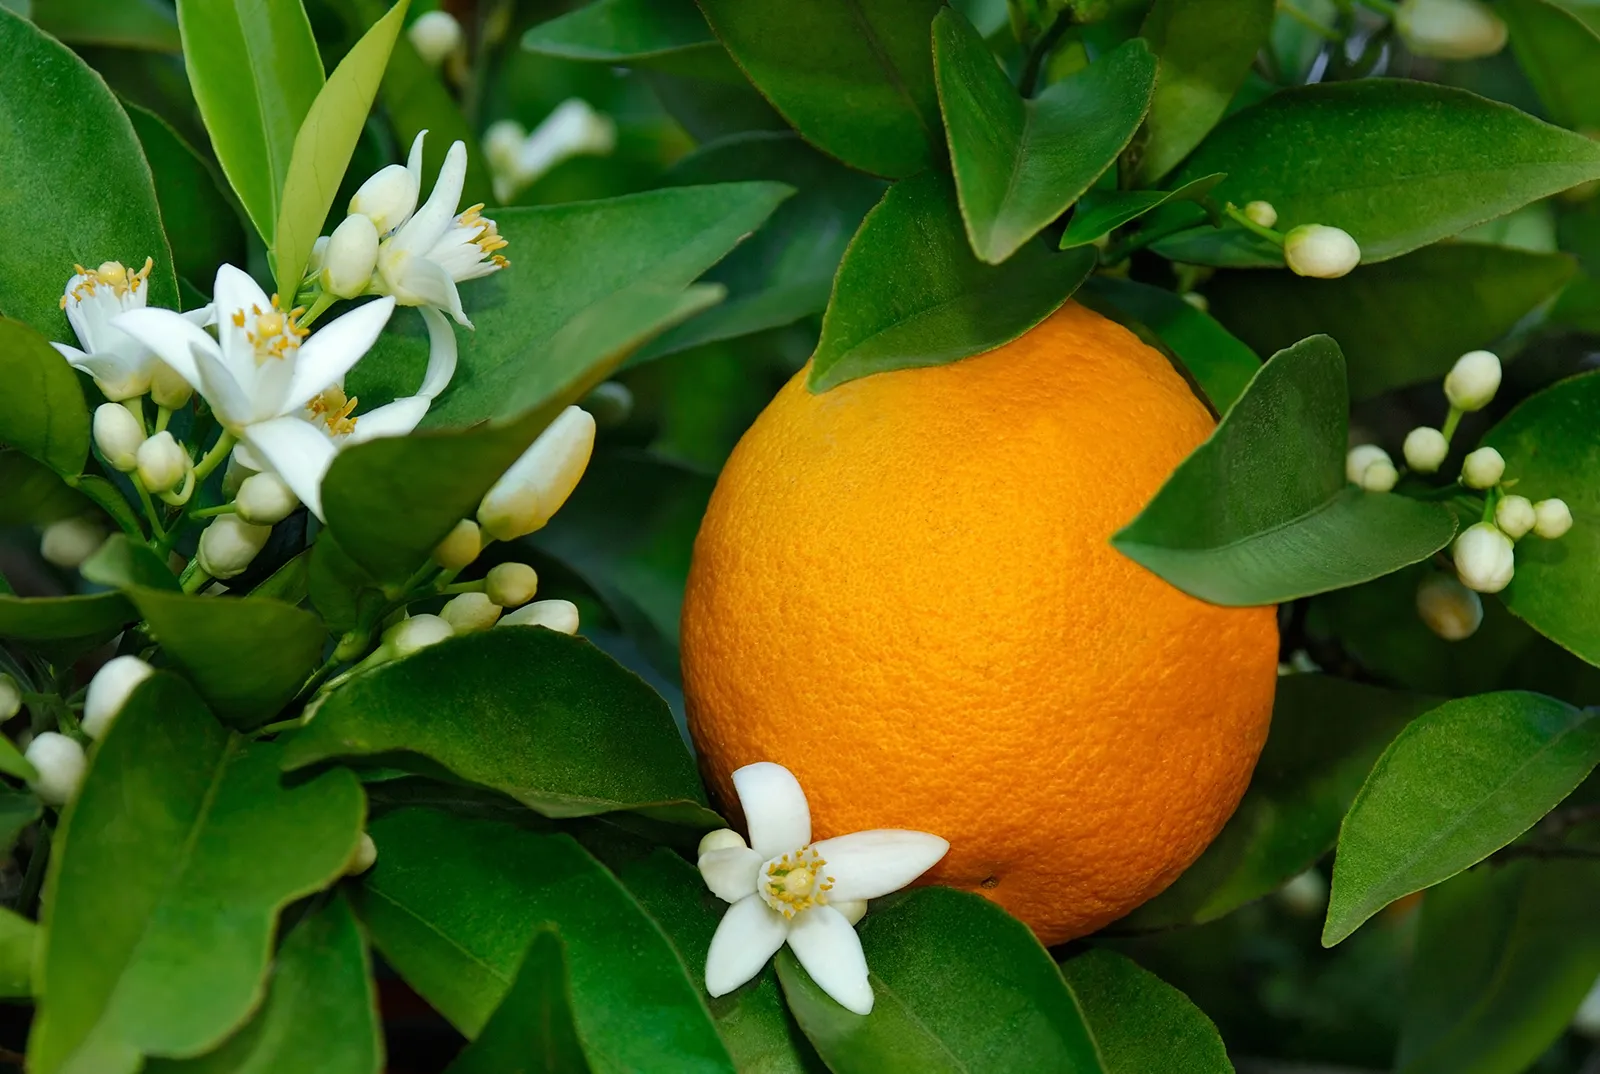 Cultiver et irriguer des oranges : une approche économiquement efficace